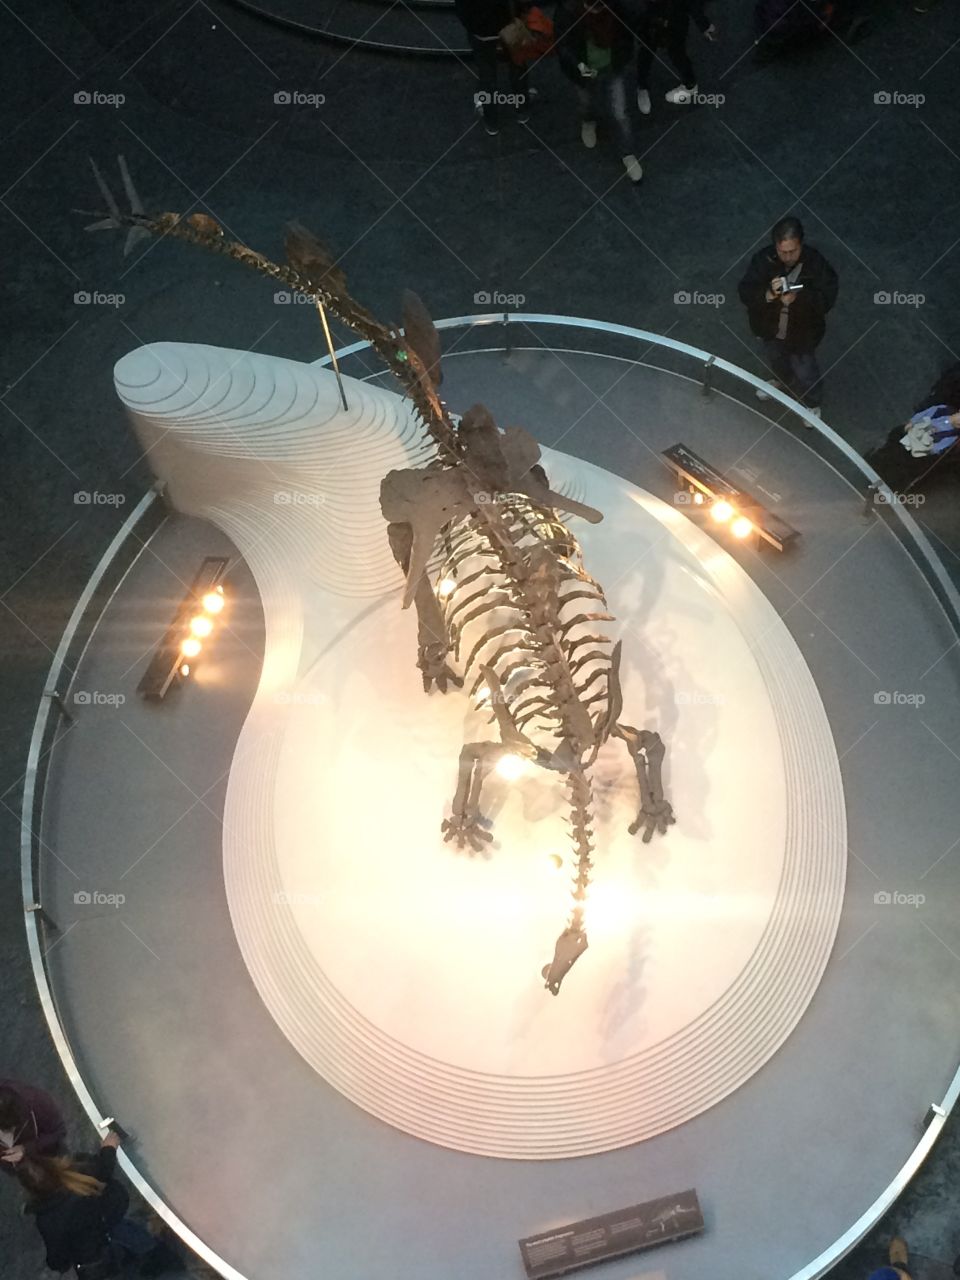 Stegosaurus at British Natural History Museum